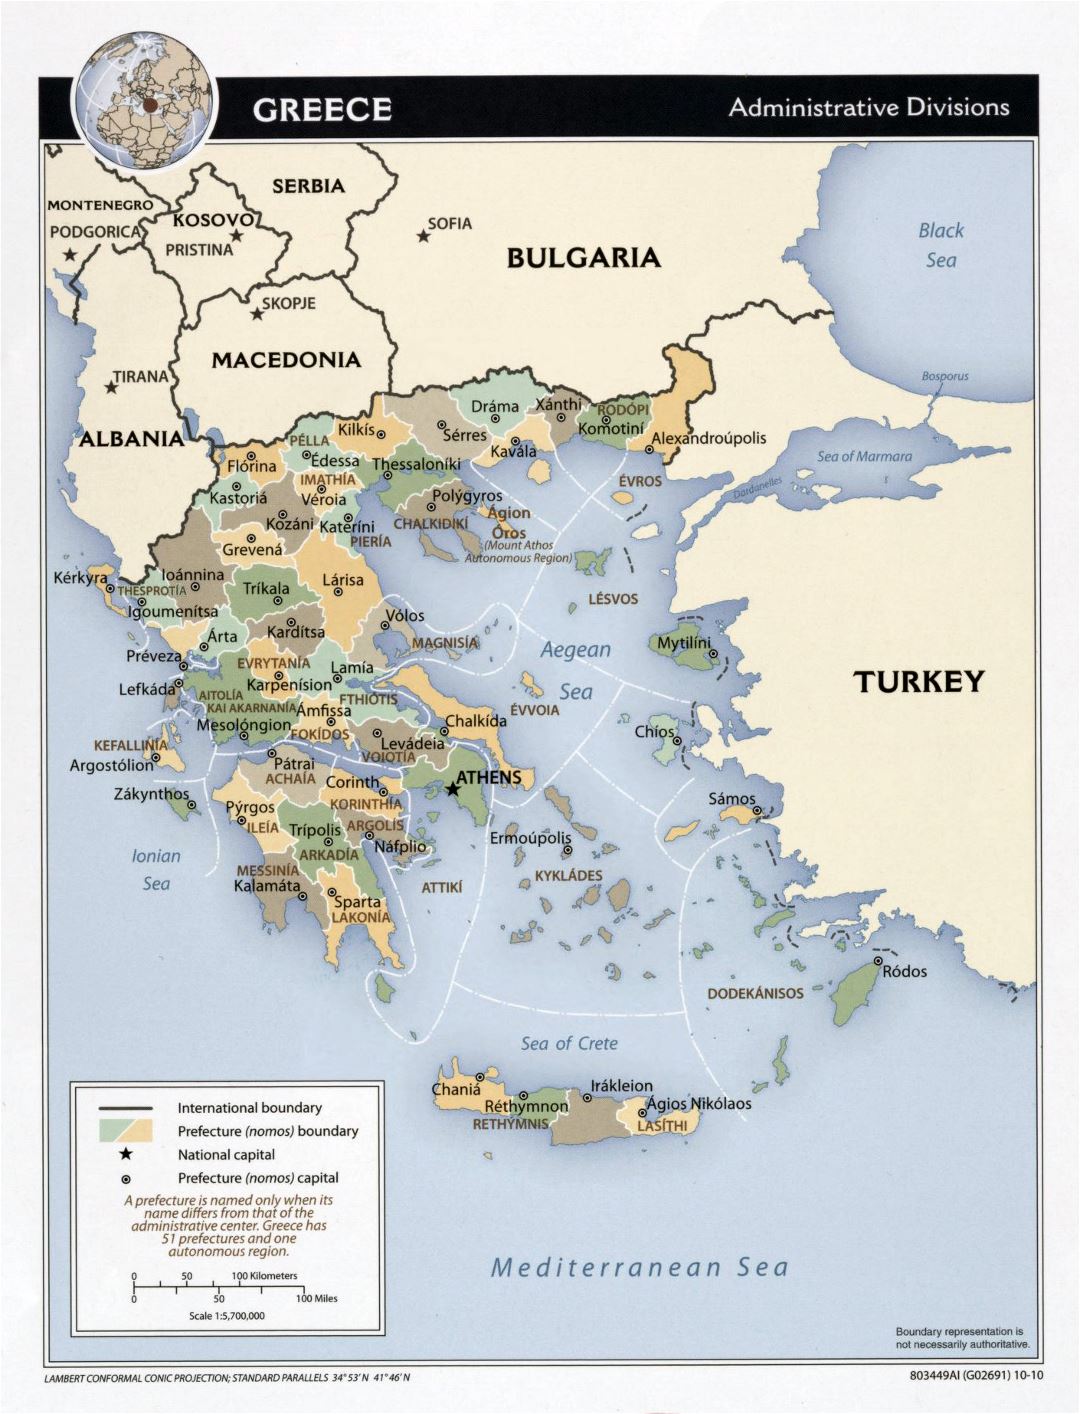 Большая детальная карта административных делений Греции - 2010